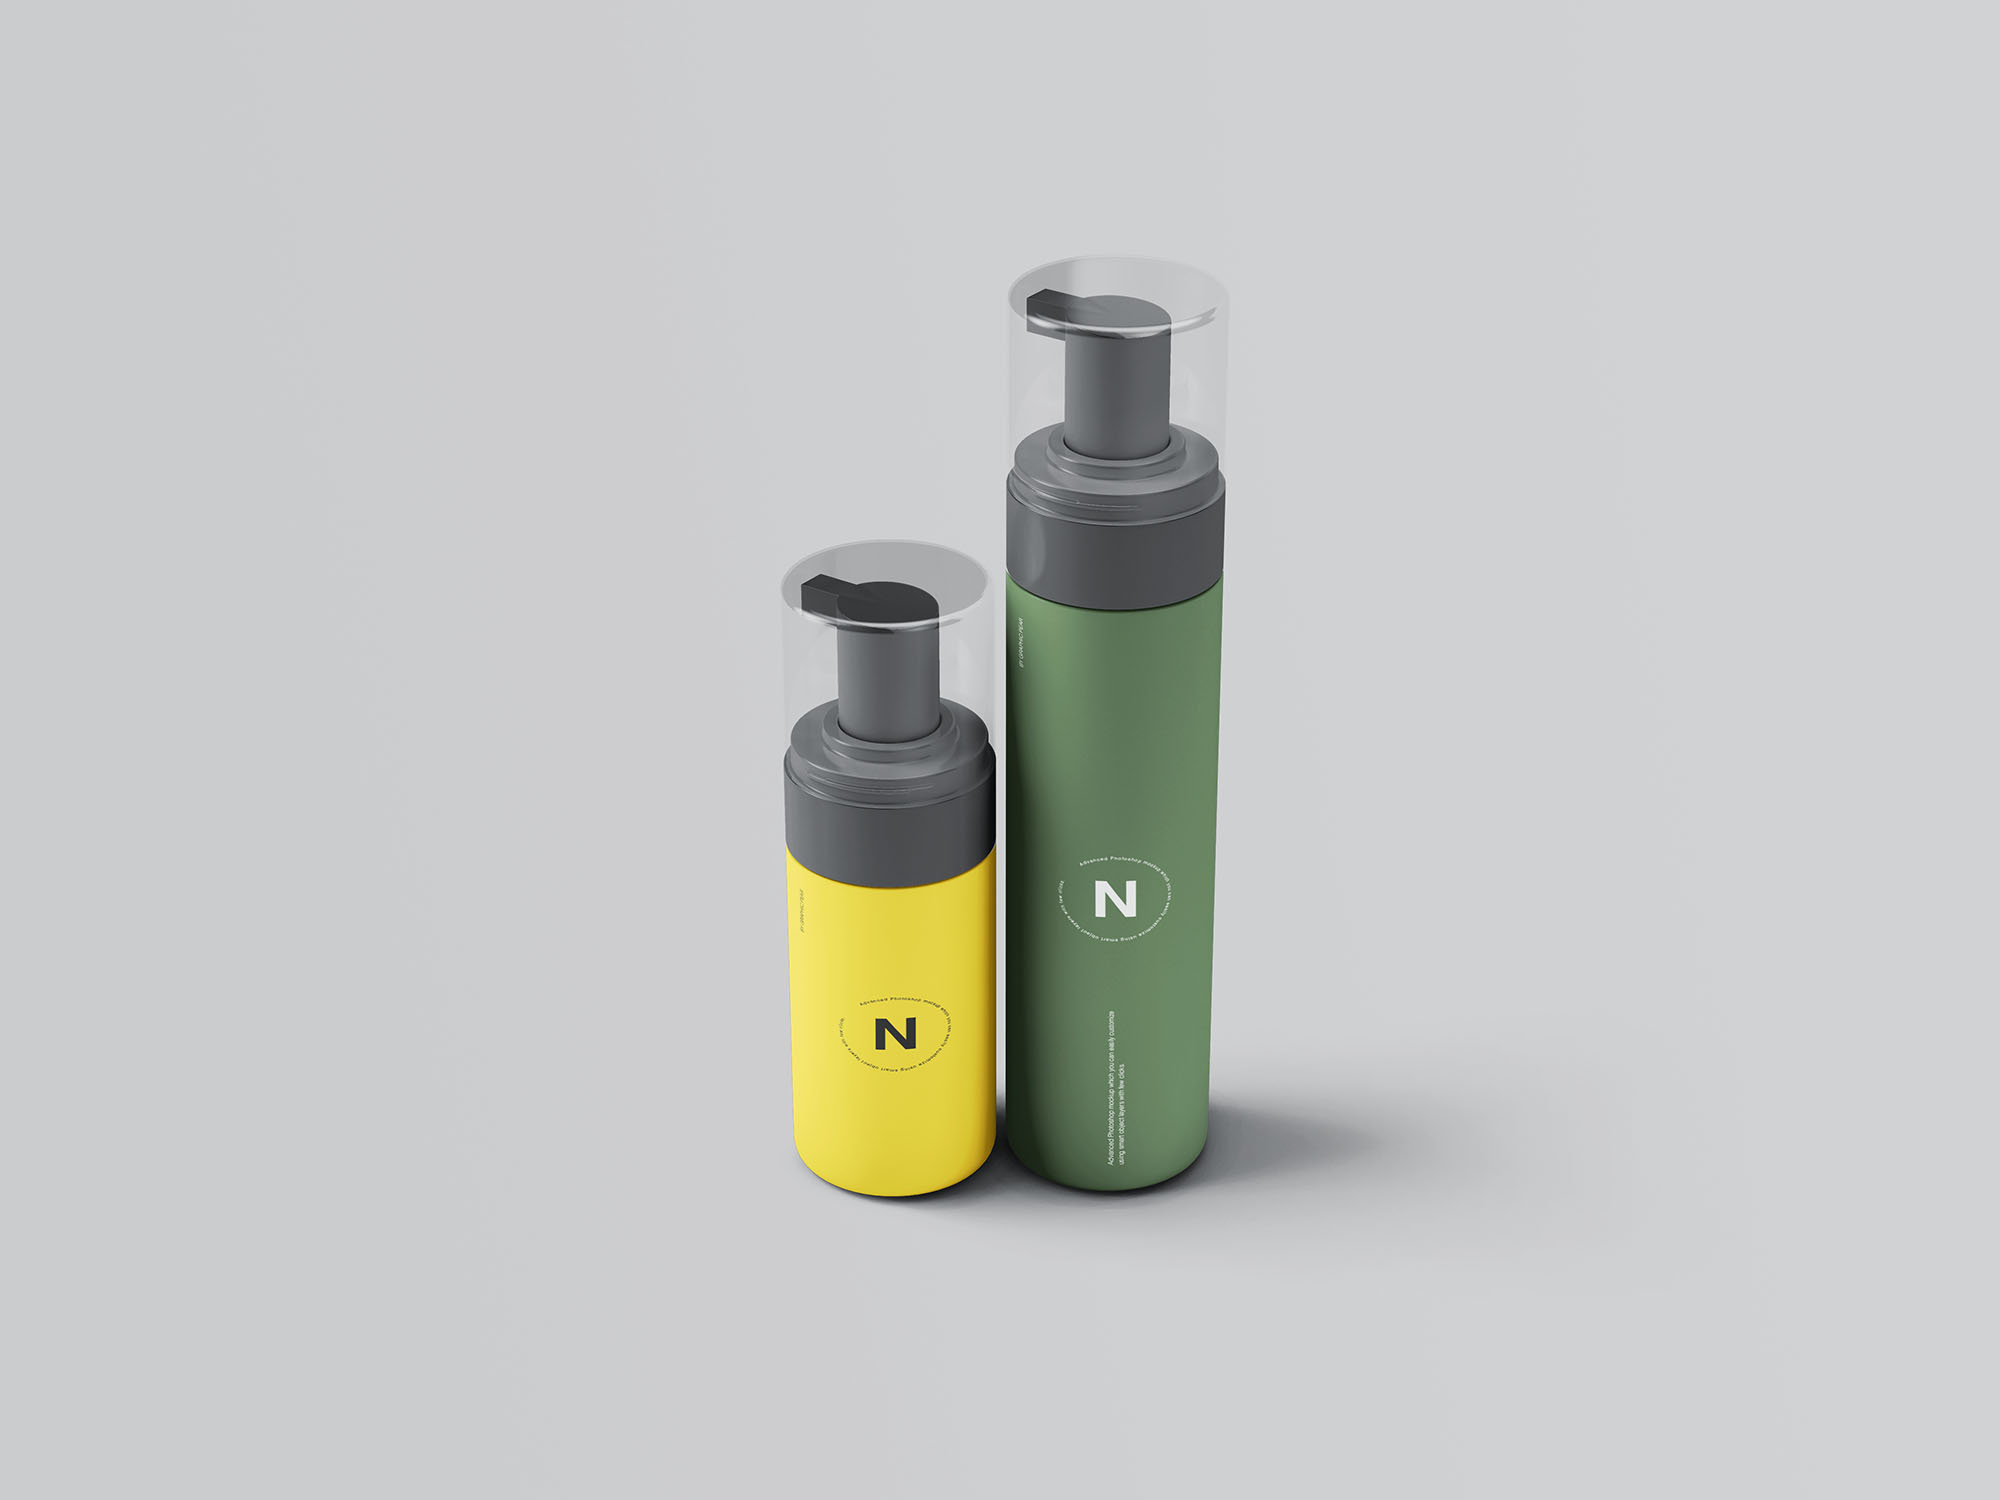 按压式化妆品护肤品瓶外观设计蚂蚁素材精选模板 Cosmetic Bottles Packaging Mockup插图(5)